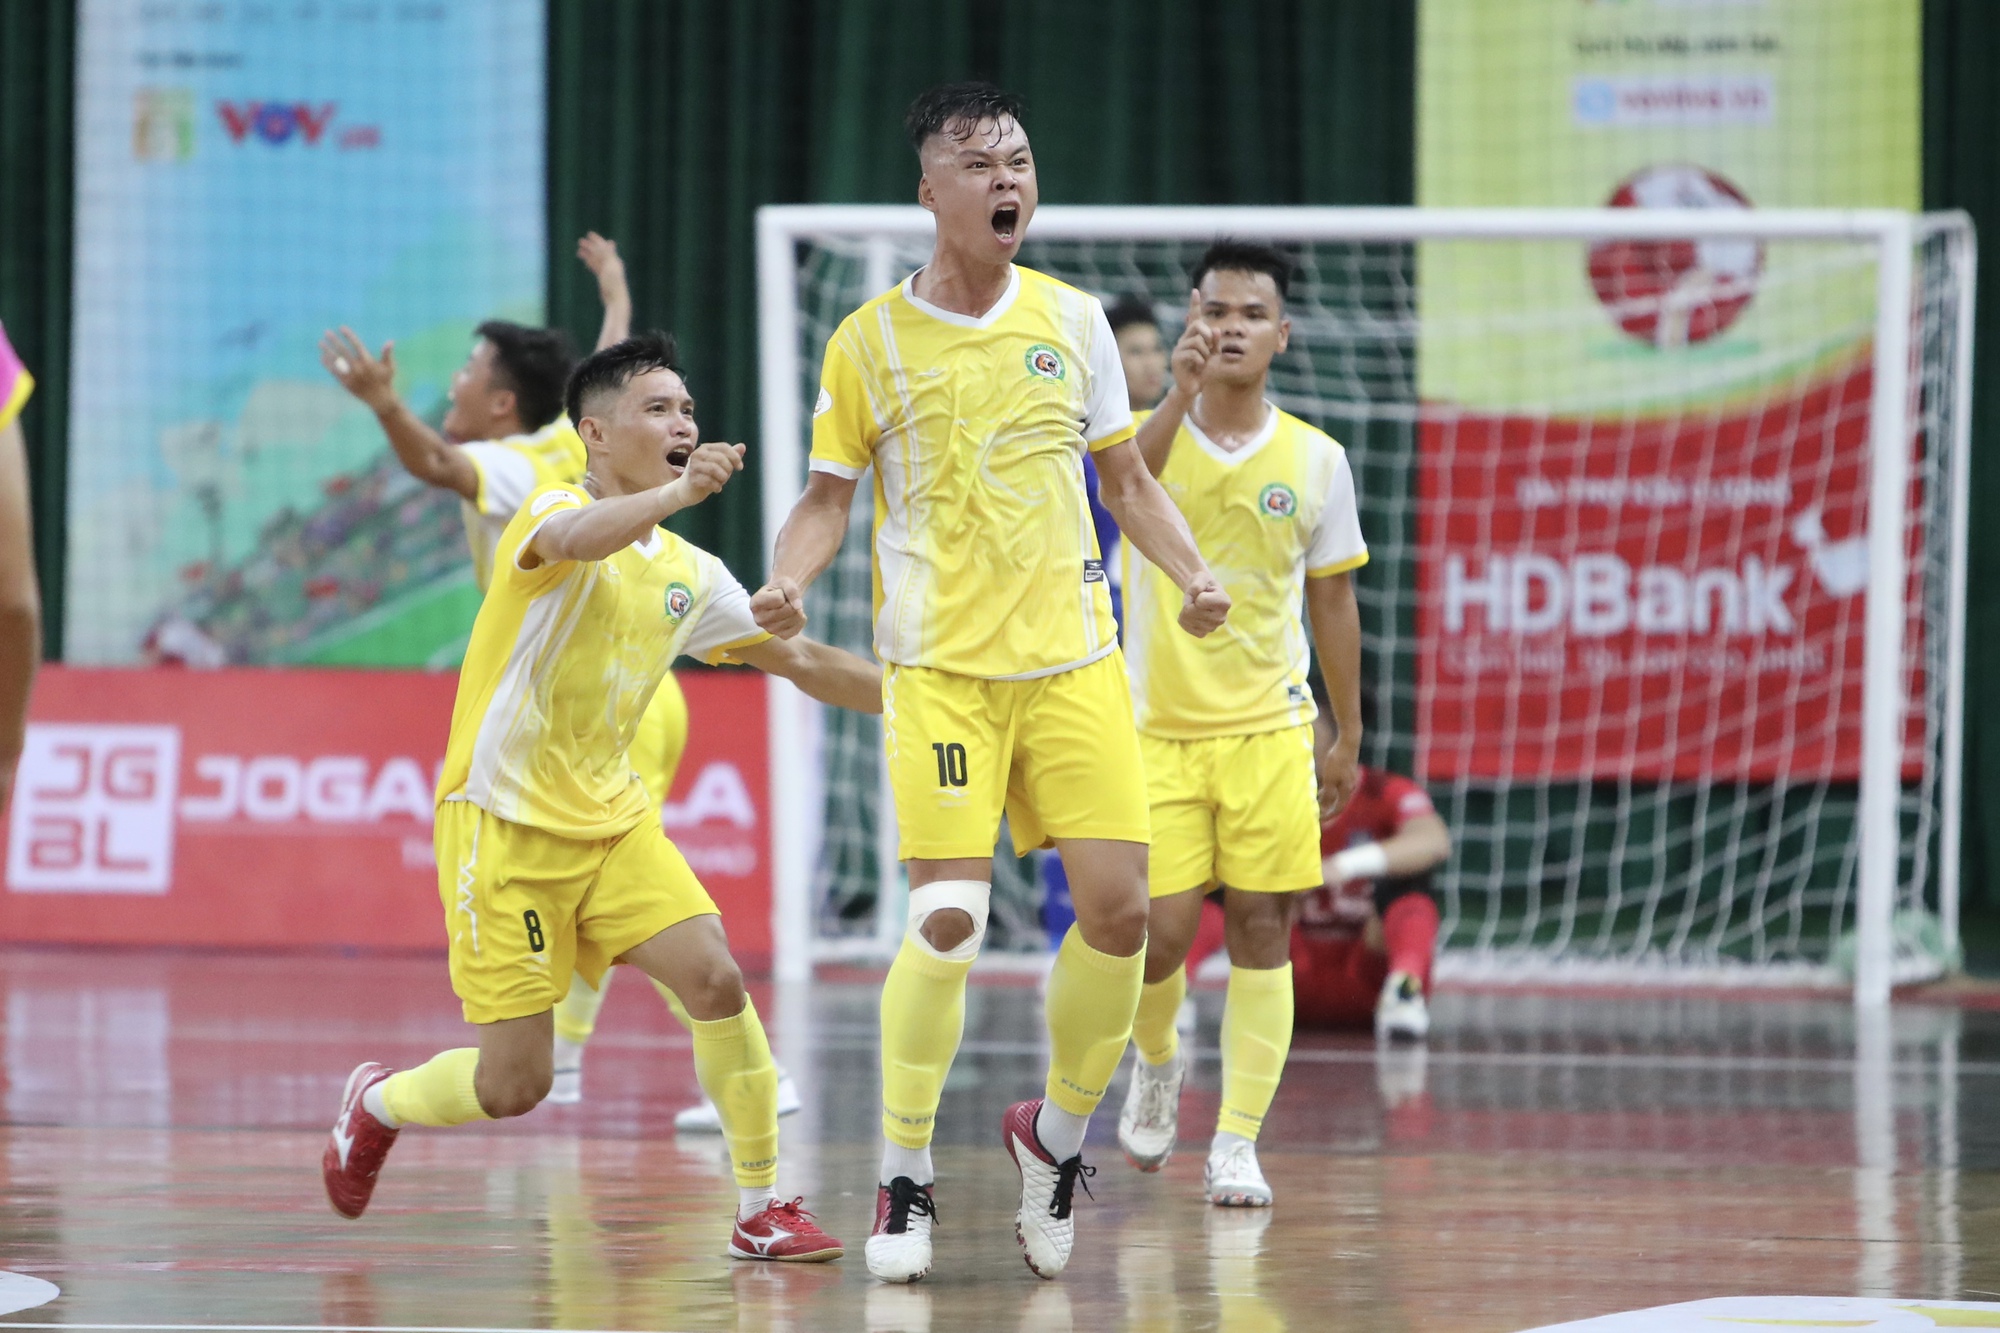 CLB Thái Sơn Nam tiếp tục trở thành cựu vương giải futsal quốc nội - Ảnh 6.